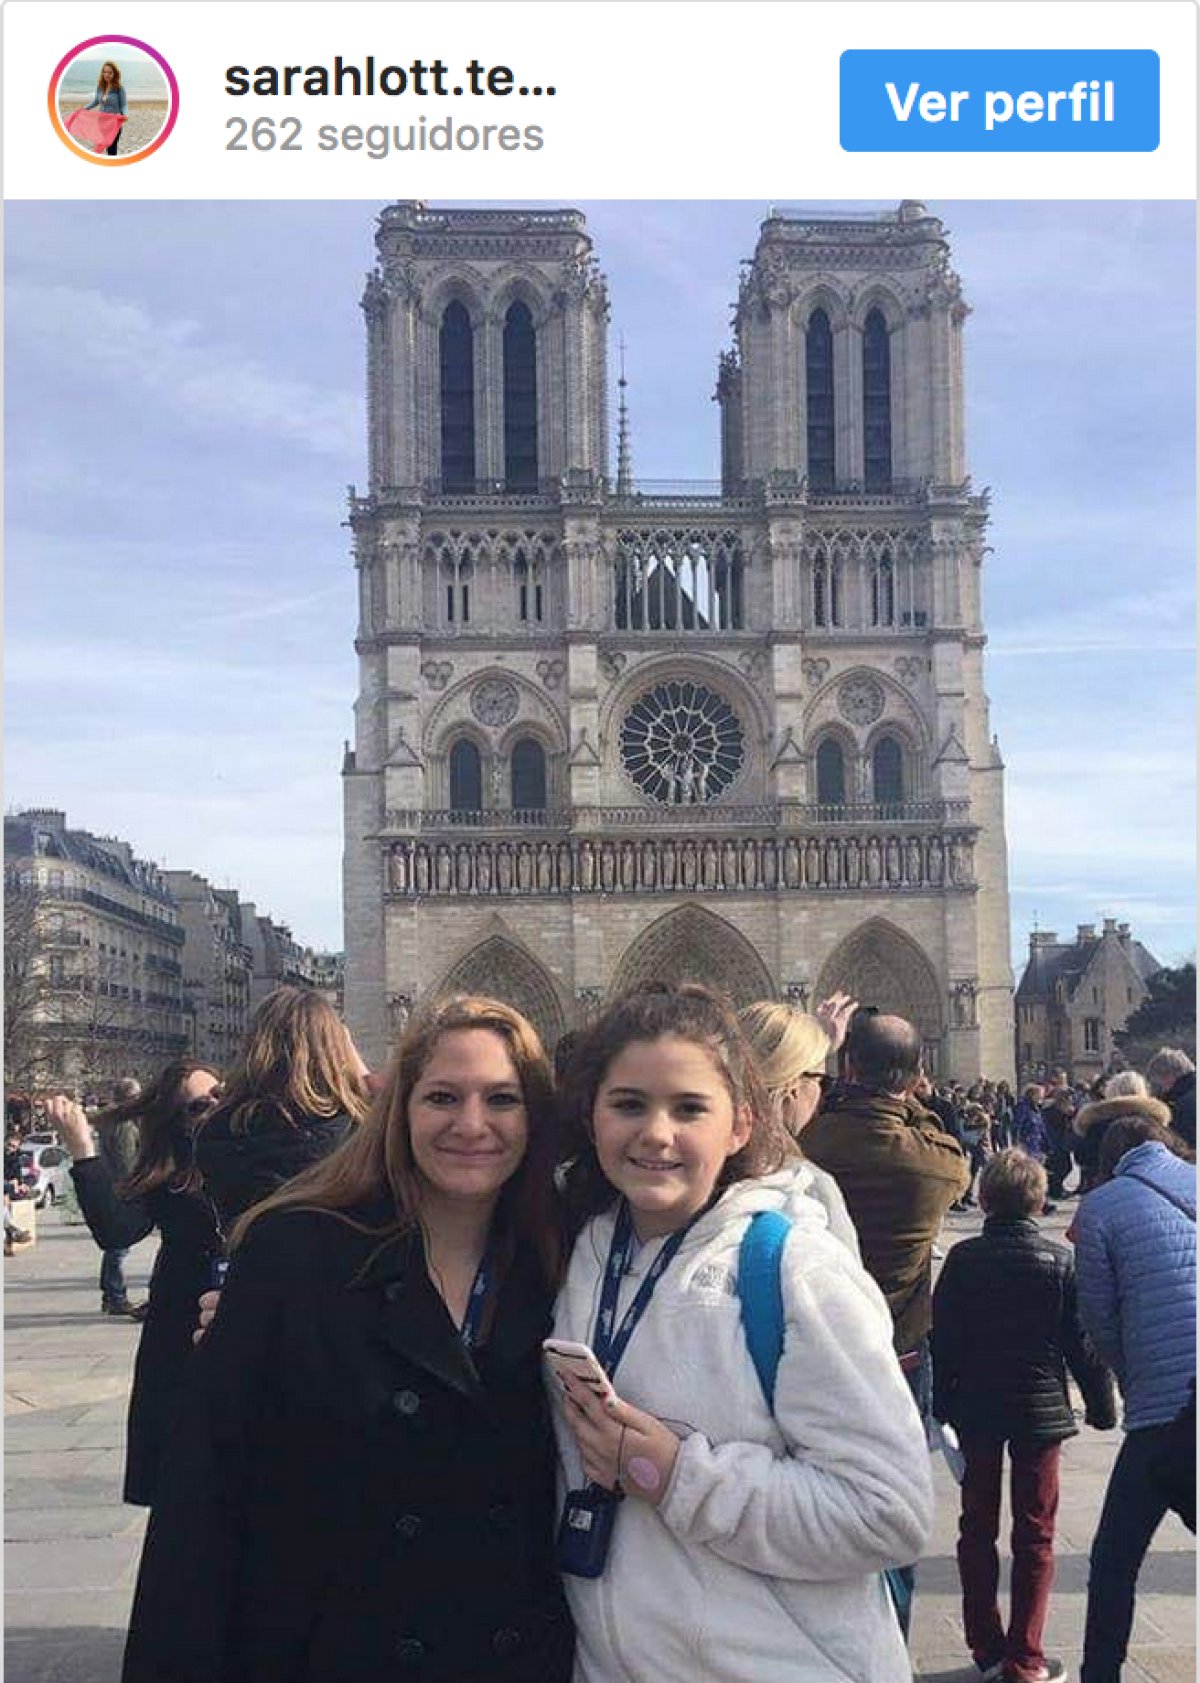 Después de la tragedia usuarios en redes recuerdan su visita a Notre Dame